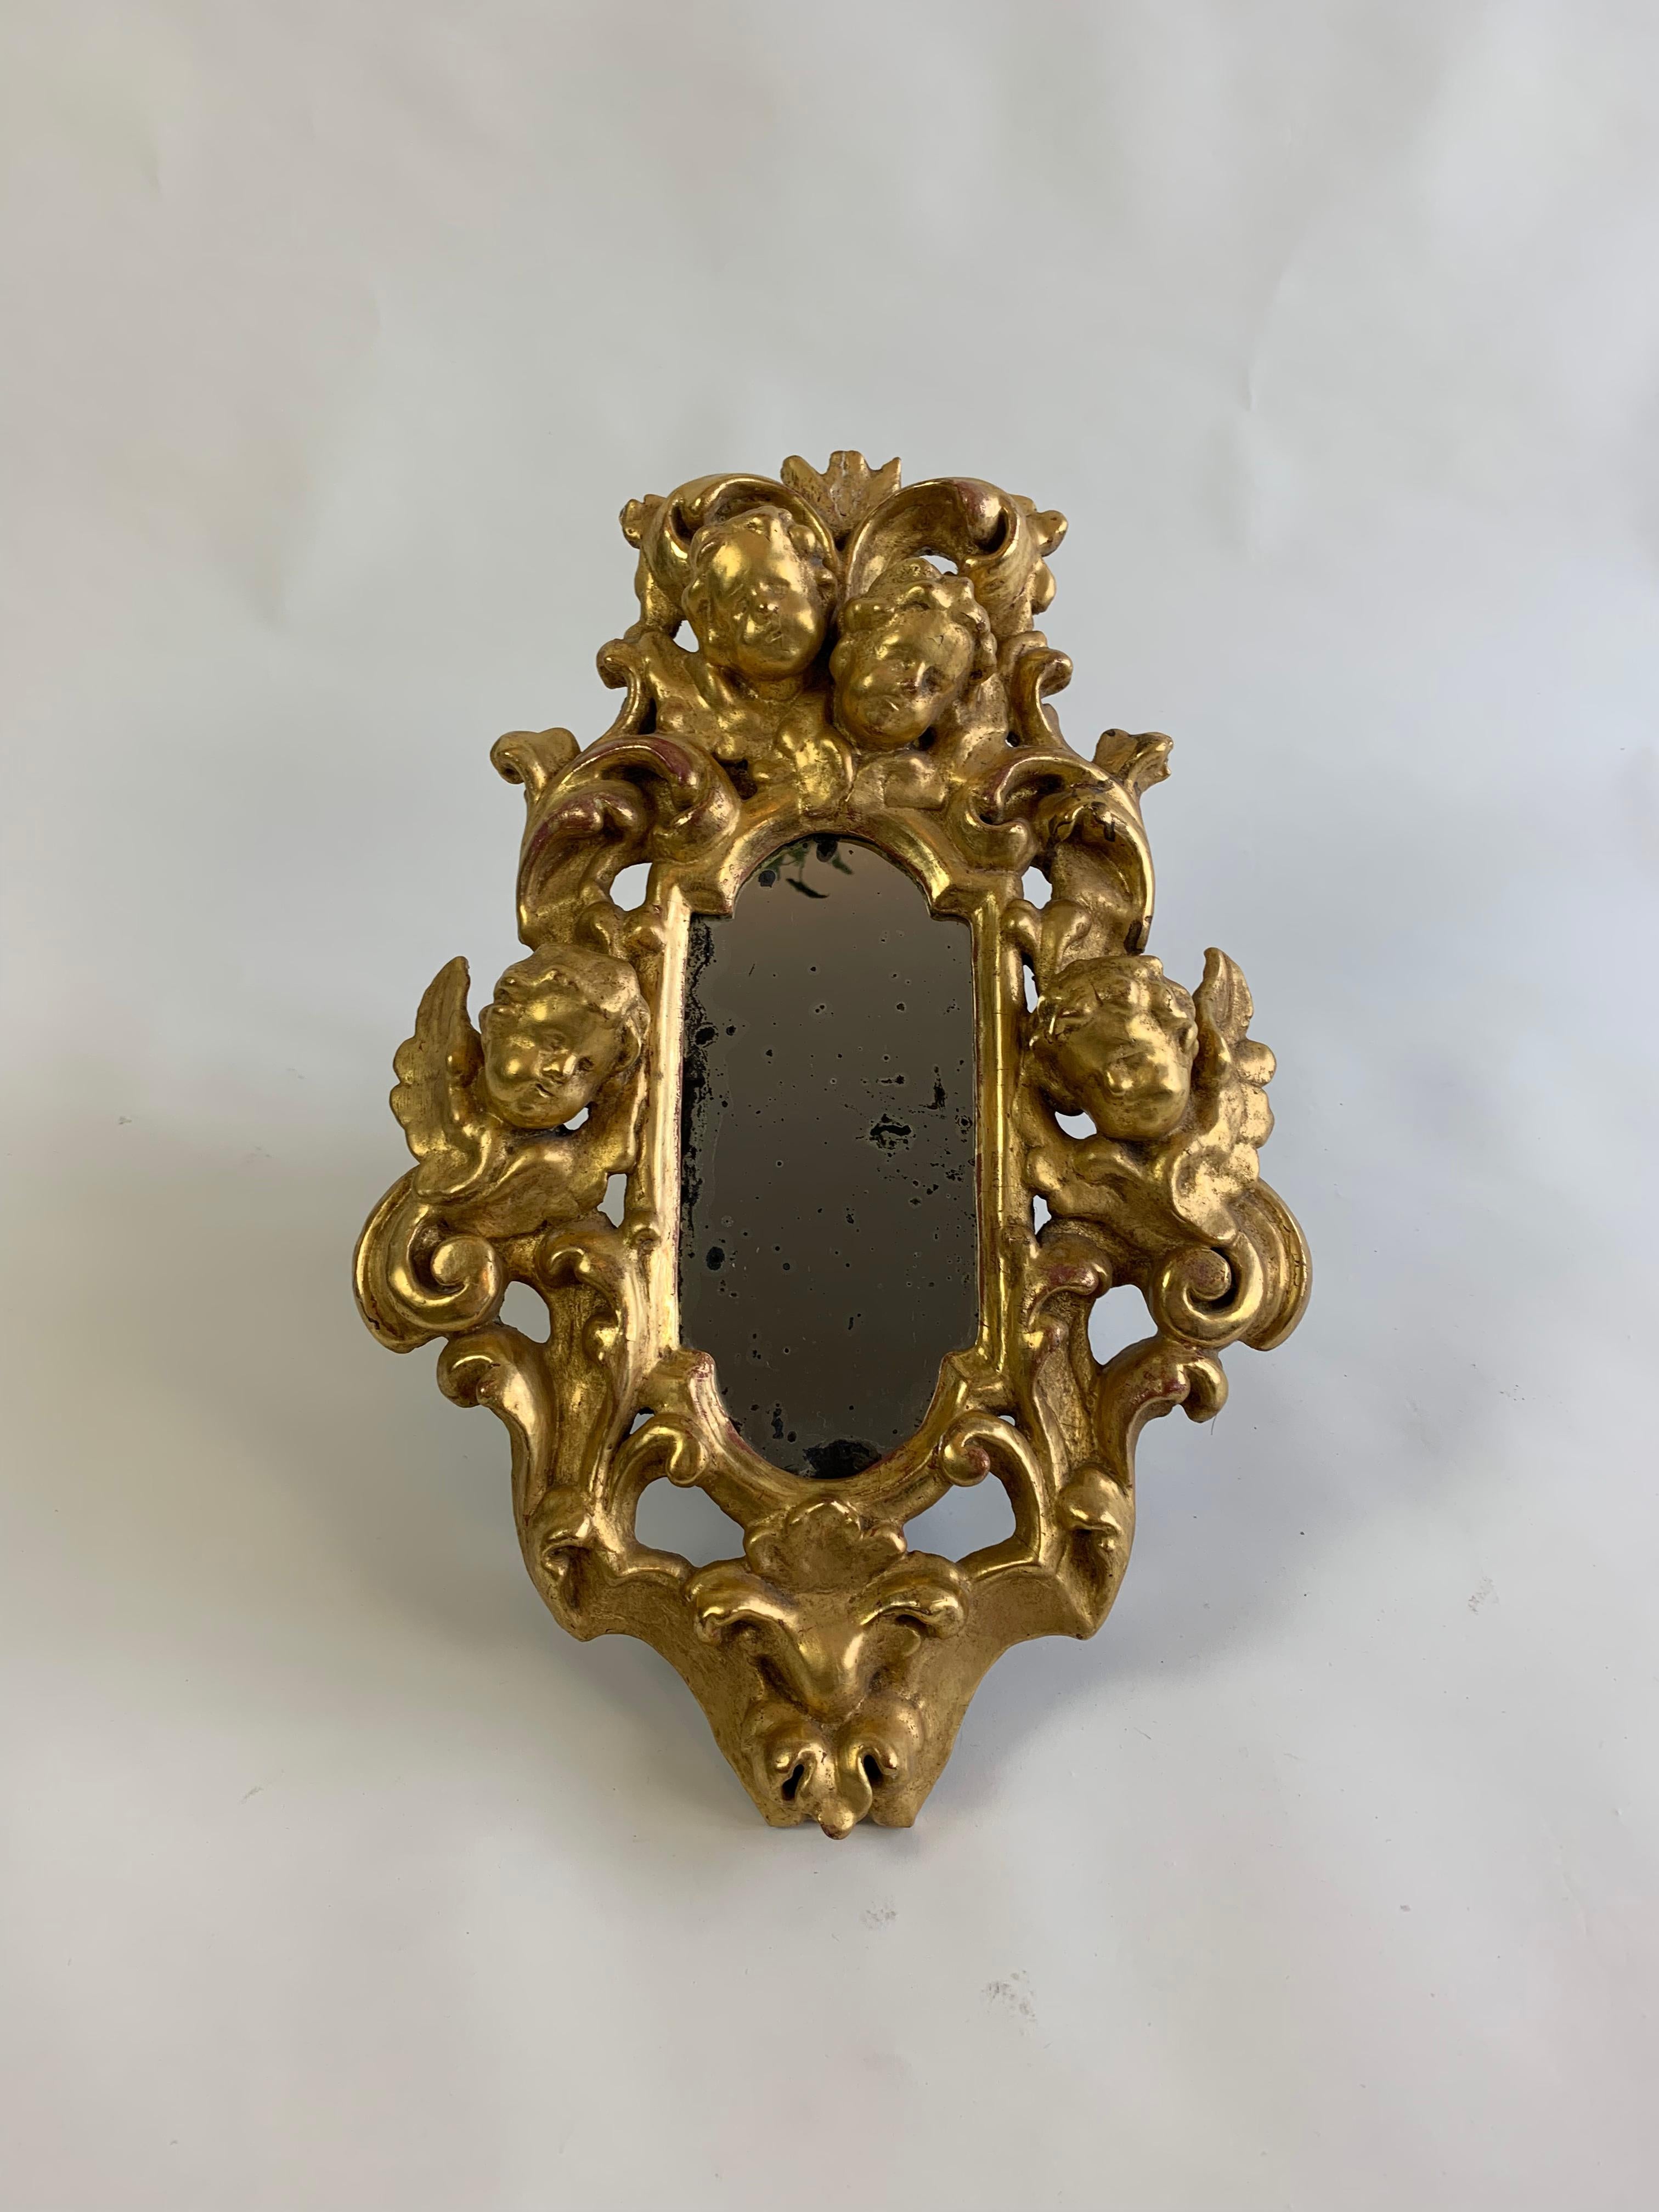 Paire de miroirs en bois doré de type Chérubin. En bon état, compte tenu de l'âge. Les miroirs ont une belle patine d'usage. Vendu en tant que paire assortie, mais il est possible de le vendre individuellement. 